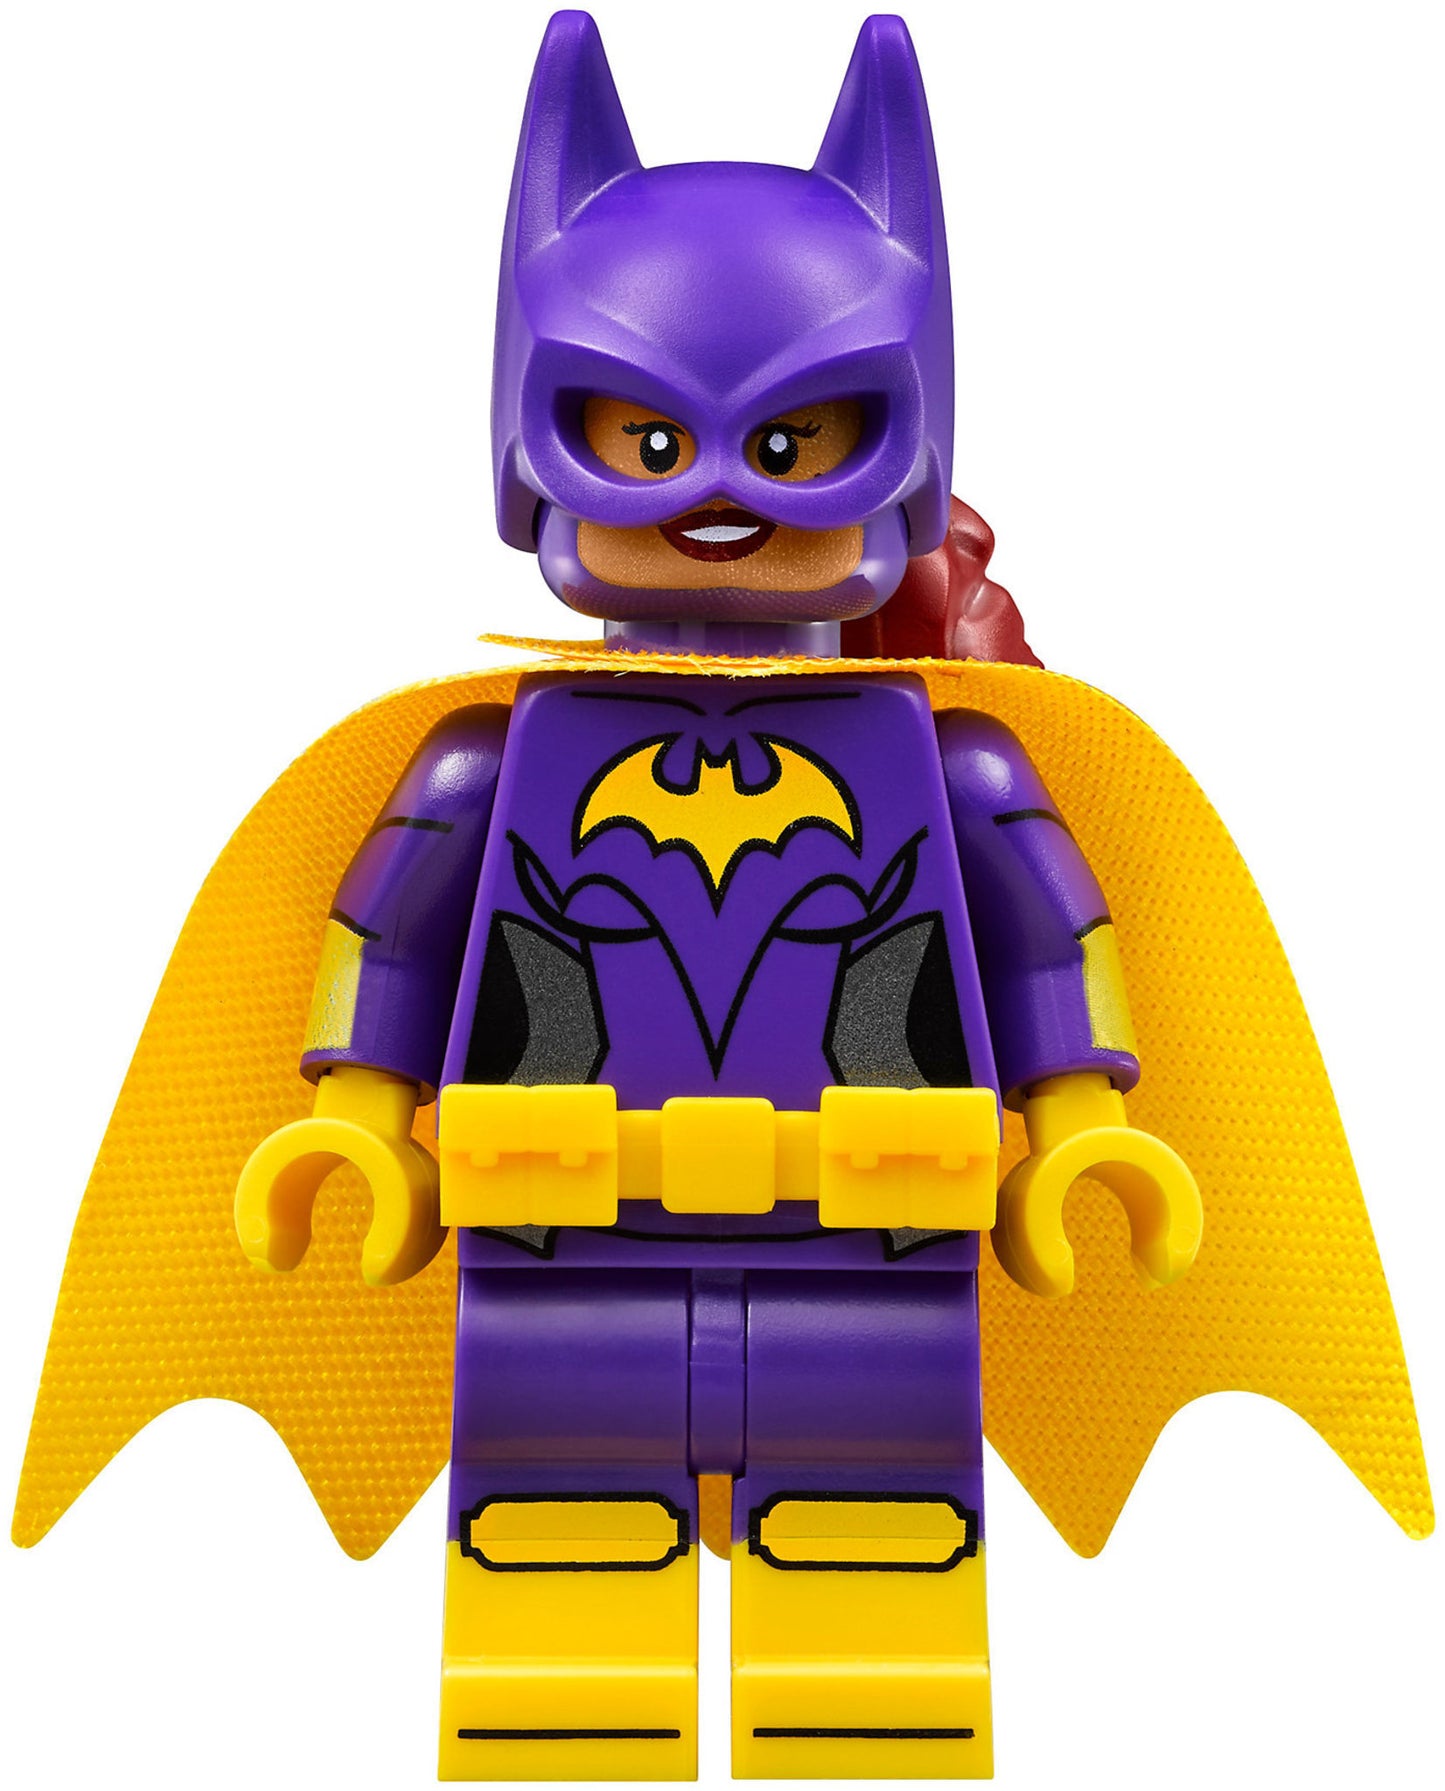 70902 LEGO Batman Movie L'inseguimento Sulla Catcycle Di Catwoman™